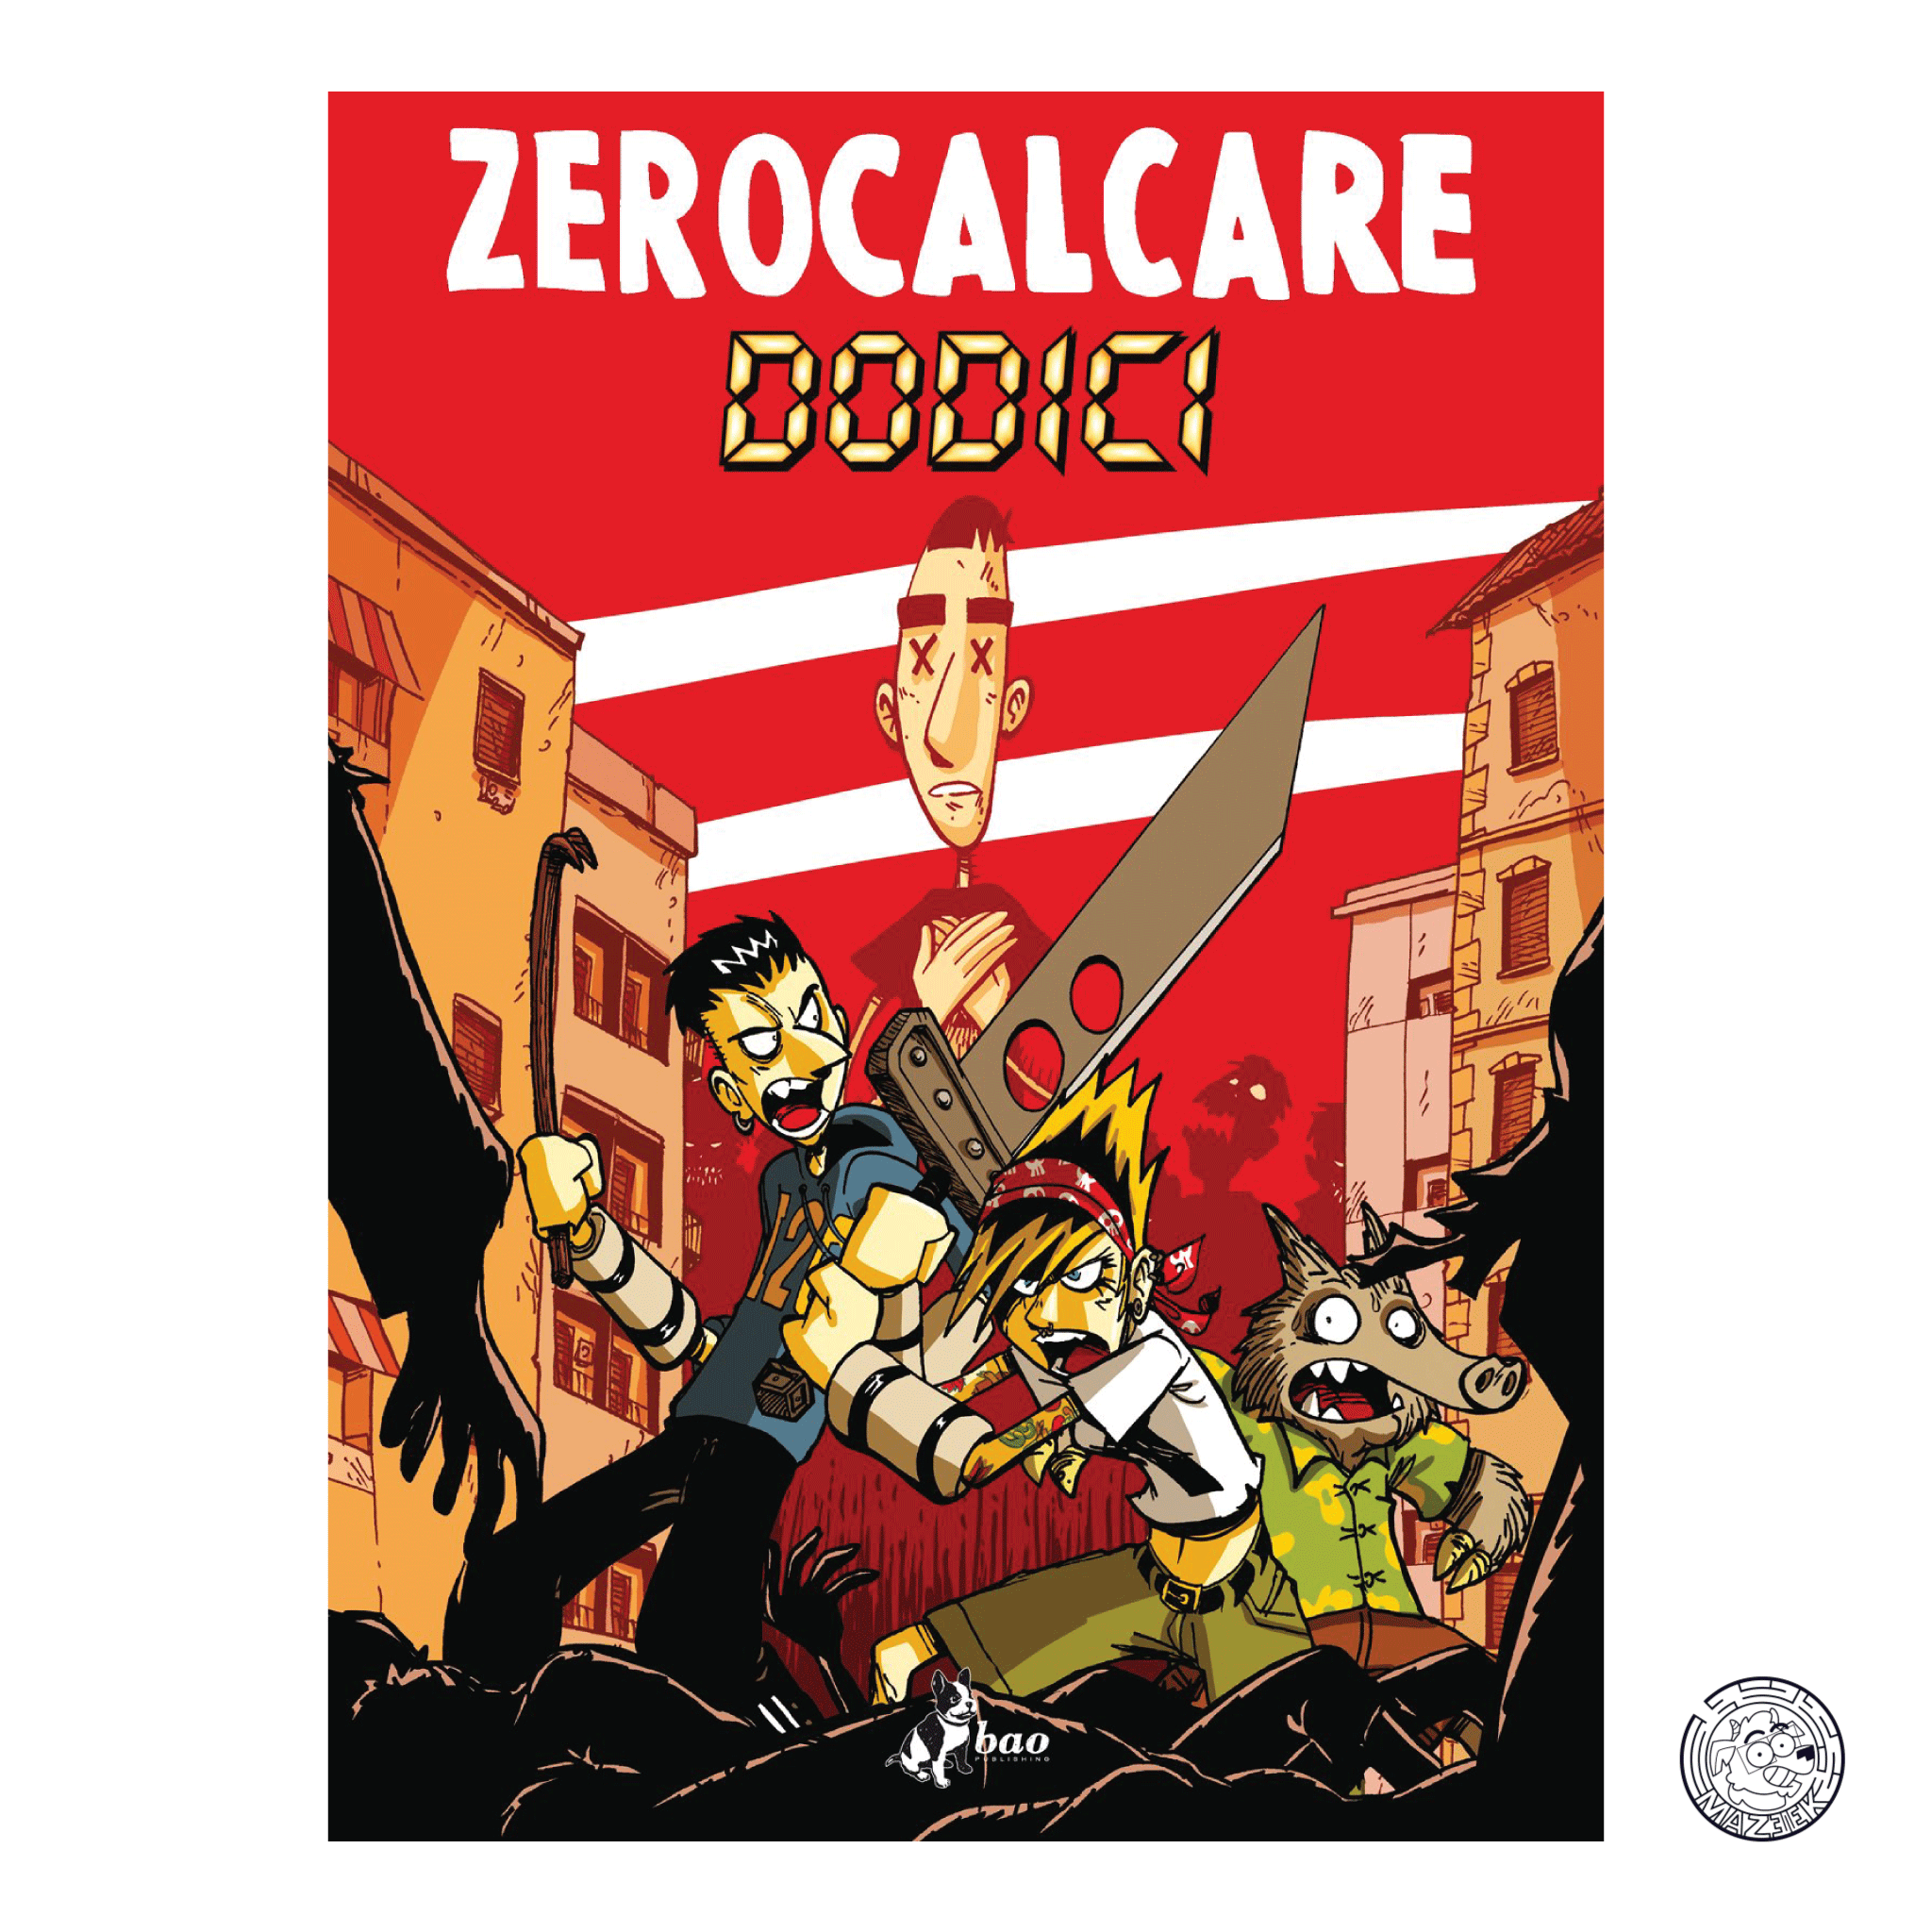 Zerocalcare: Twelve